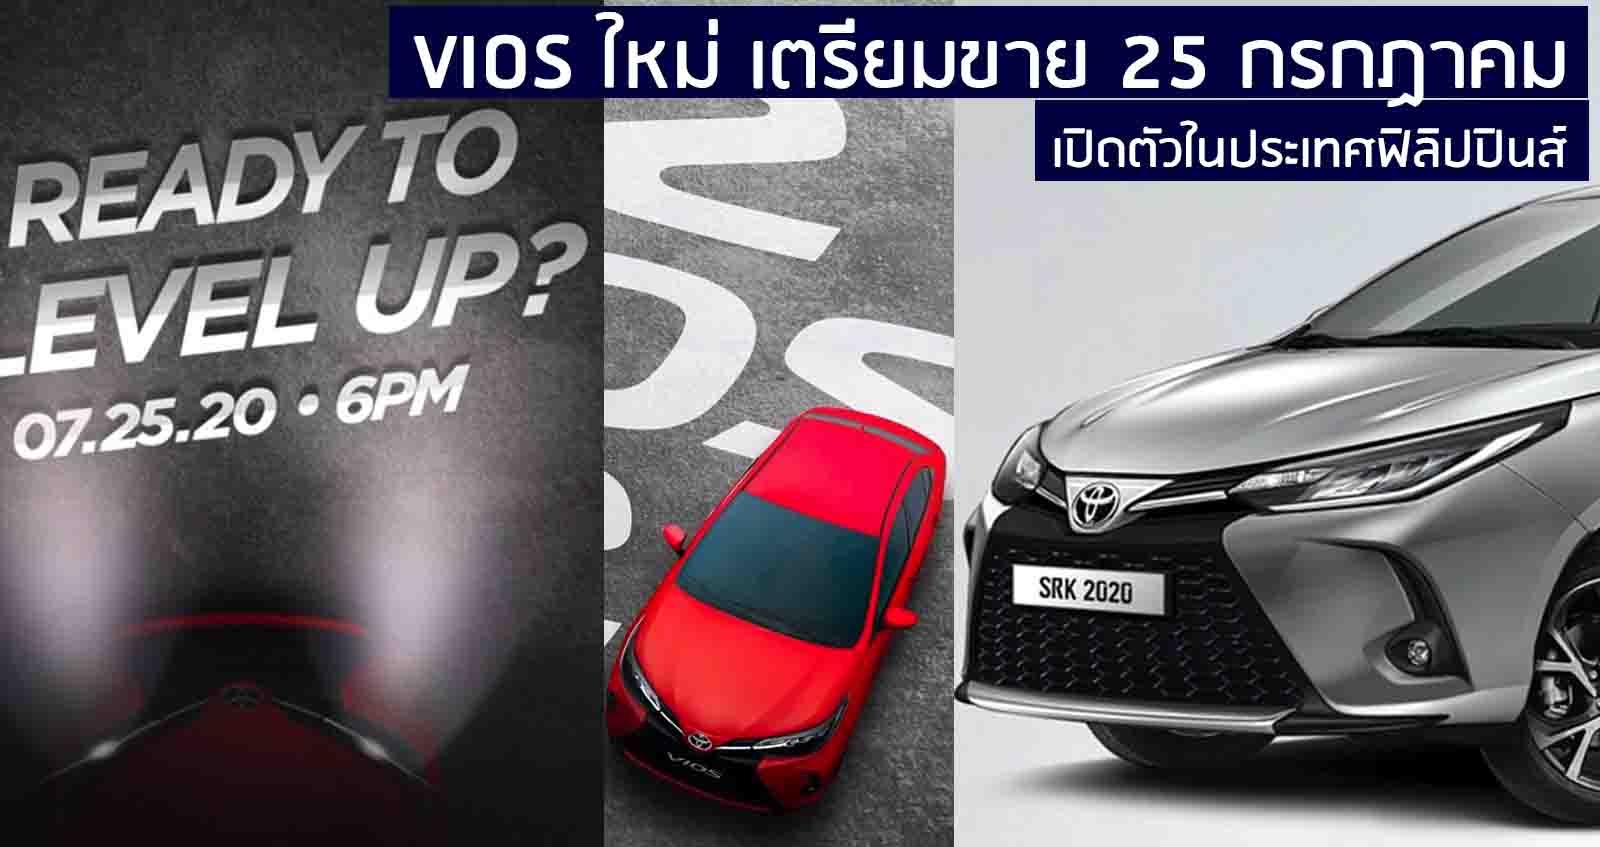 เผยทีเซอร์ Toyota Vios ใหม่ เตรียมเปิดตัวใน 25 กรกฏาคมนี้ ในฟิลิปปินส์